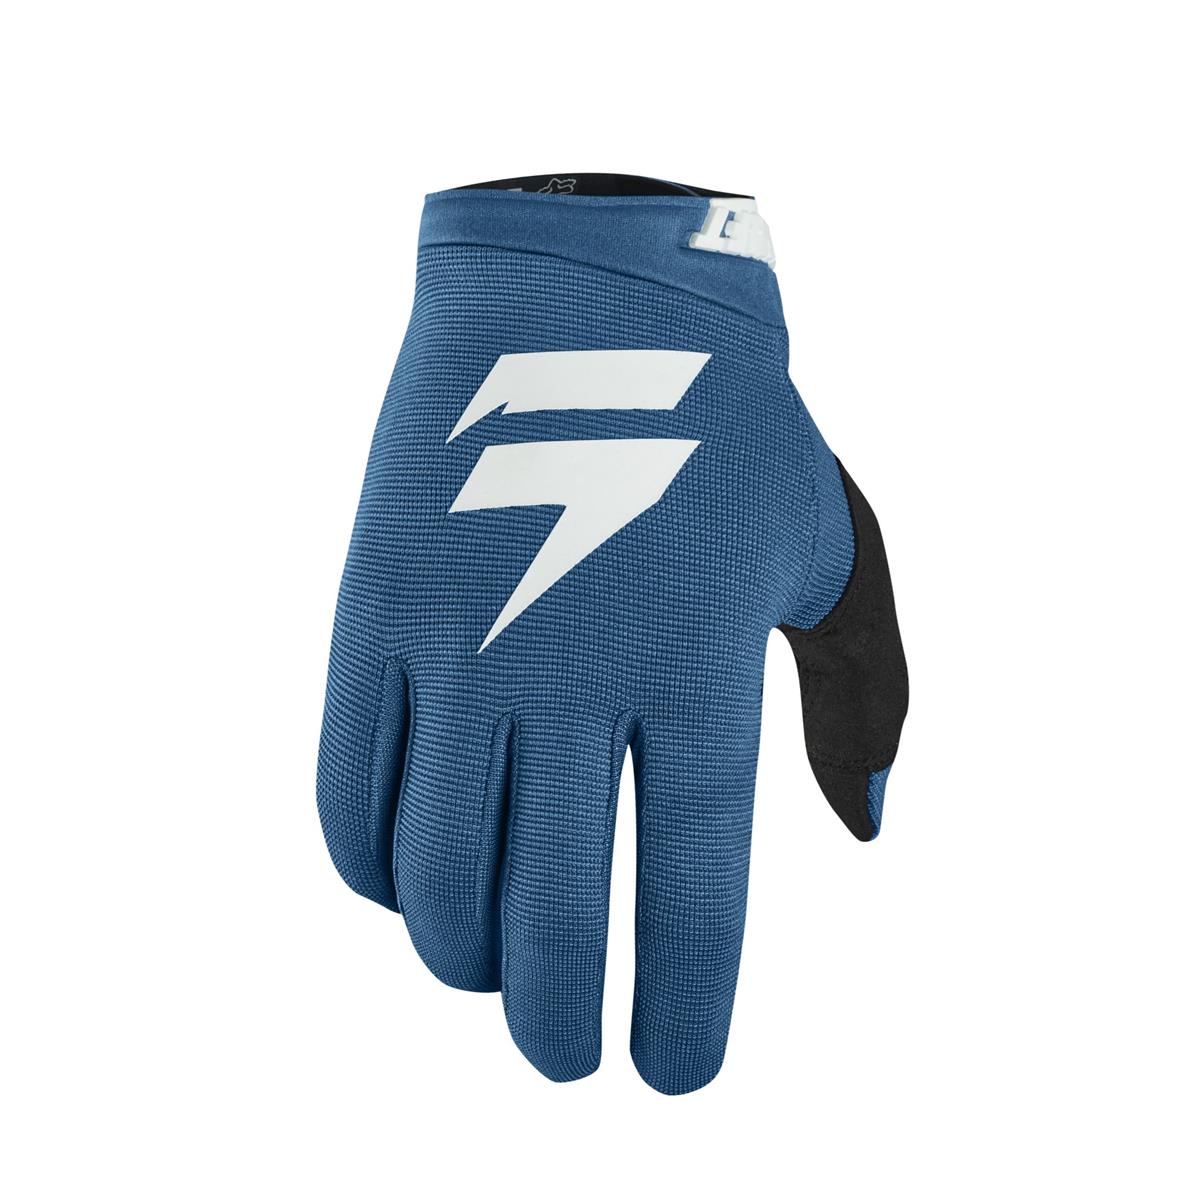 Shift Handschuhe Whit3 Label Air Blau